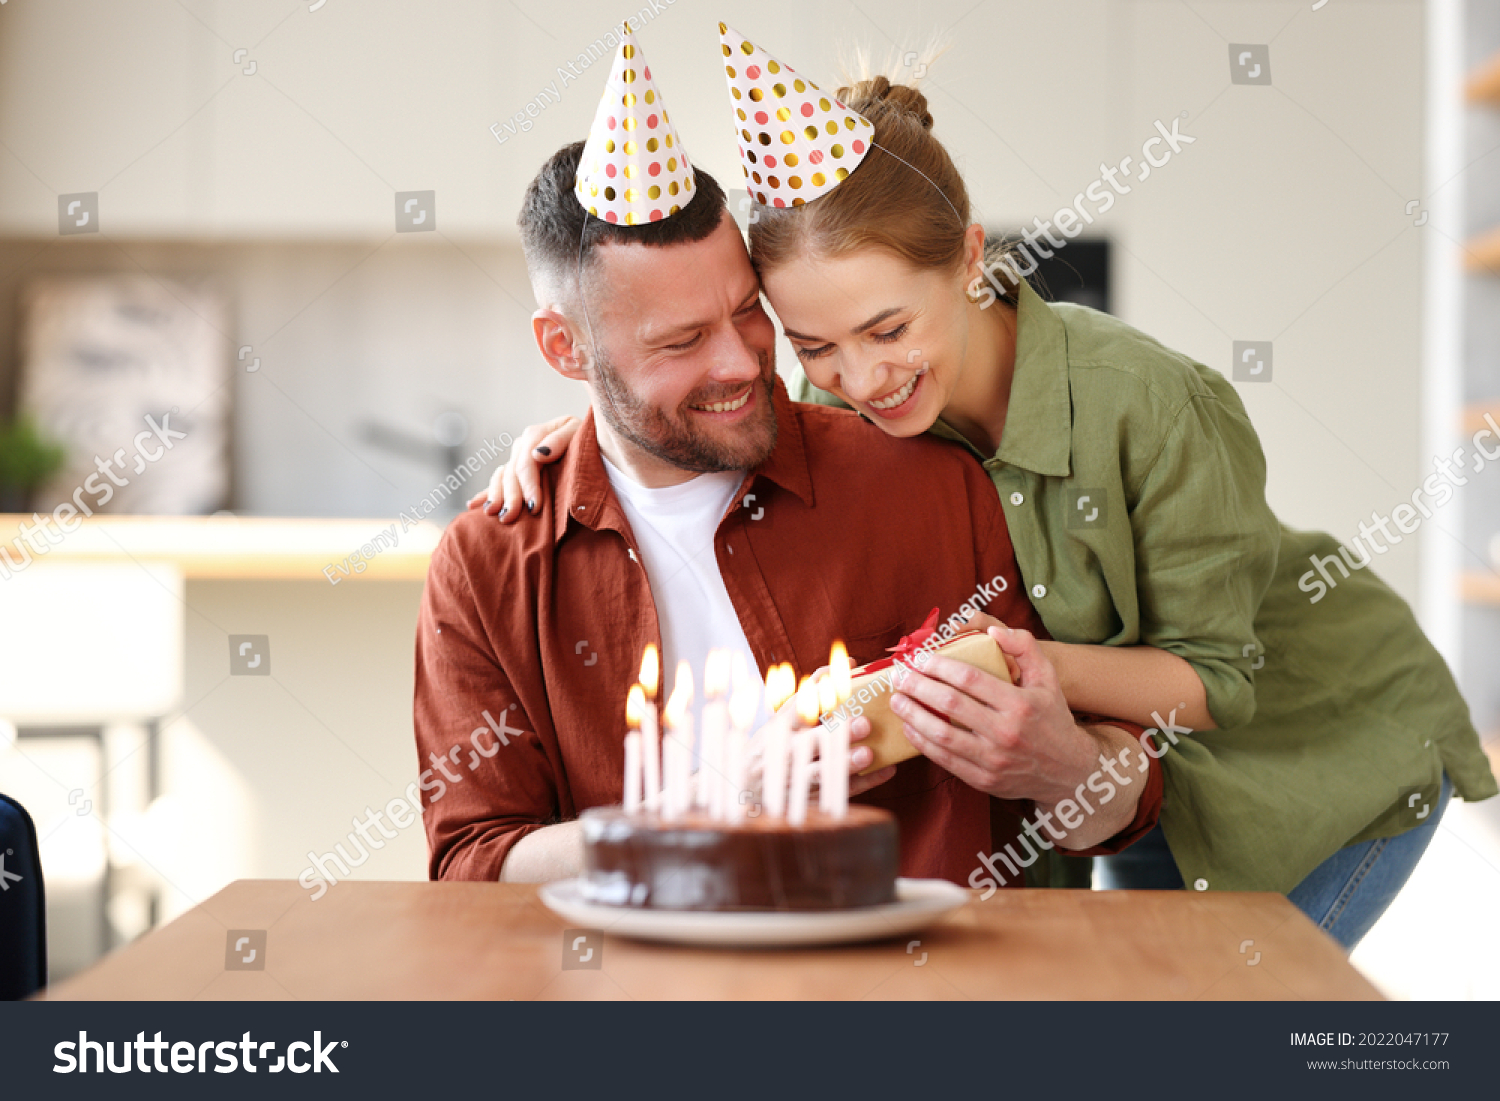 Happy couple celebrating birthday with romantic surprise